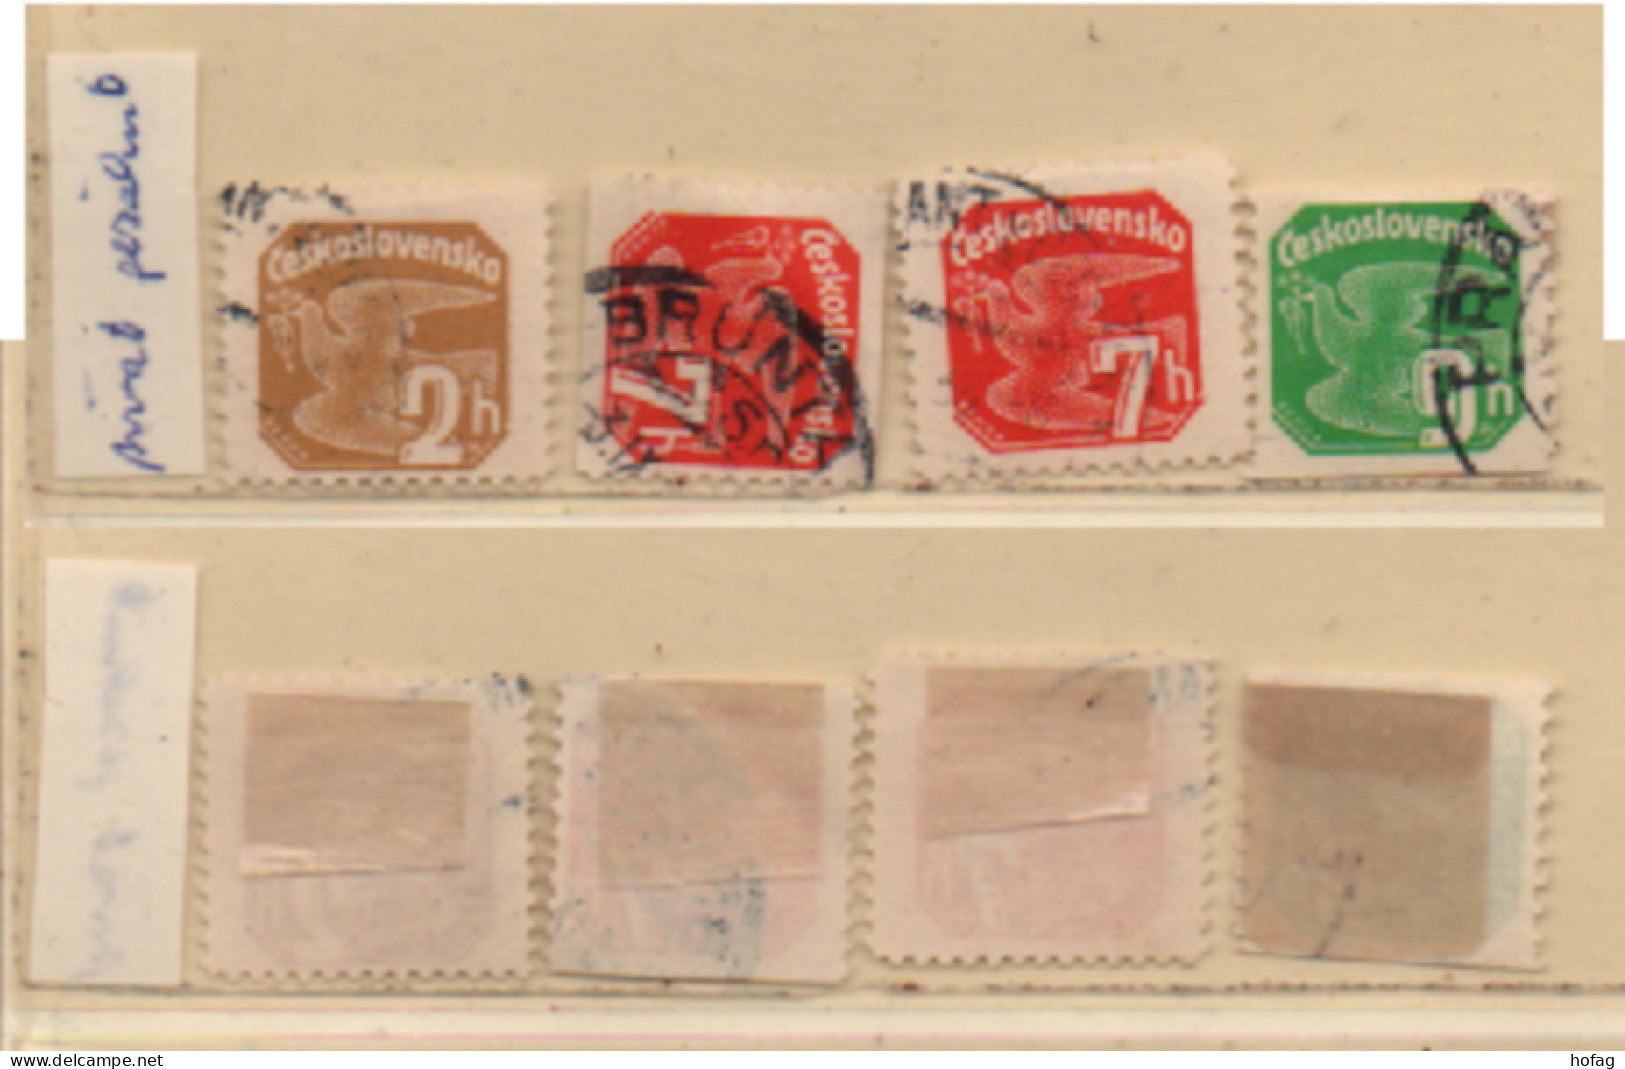 Tschechoslowakei 1937 MiNr.: 364, 366, 367 Zeitungsmarken Gezähnt, Gestempelt Chechoslovakia Used Perforated - Timbres Pour Journaux